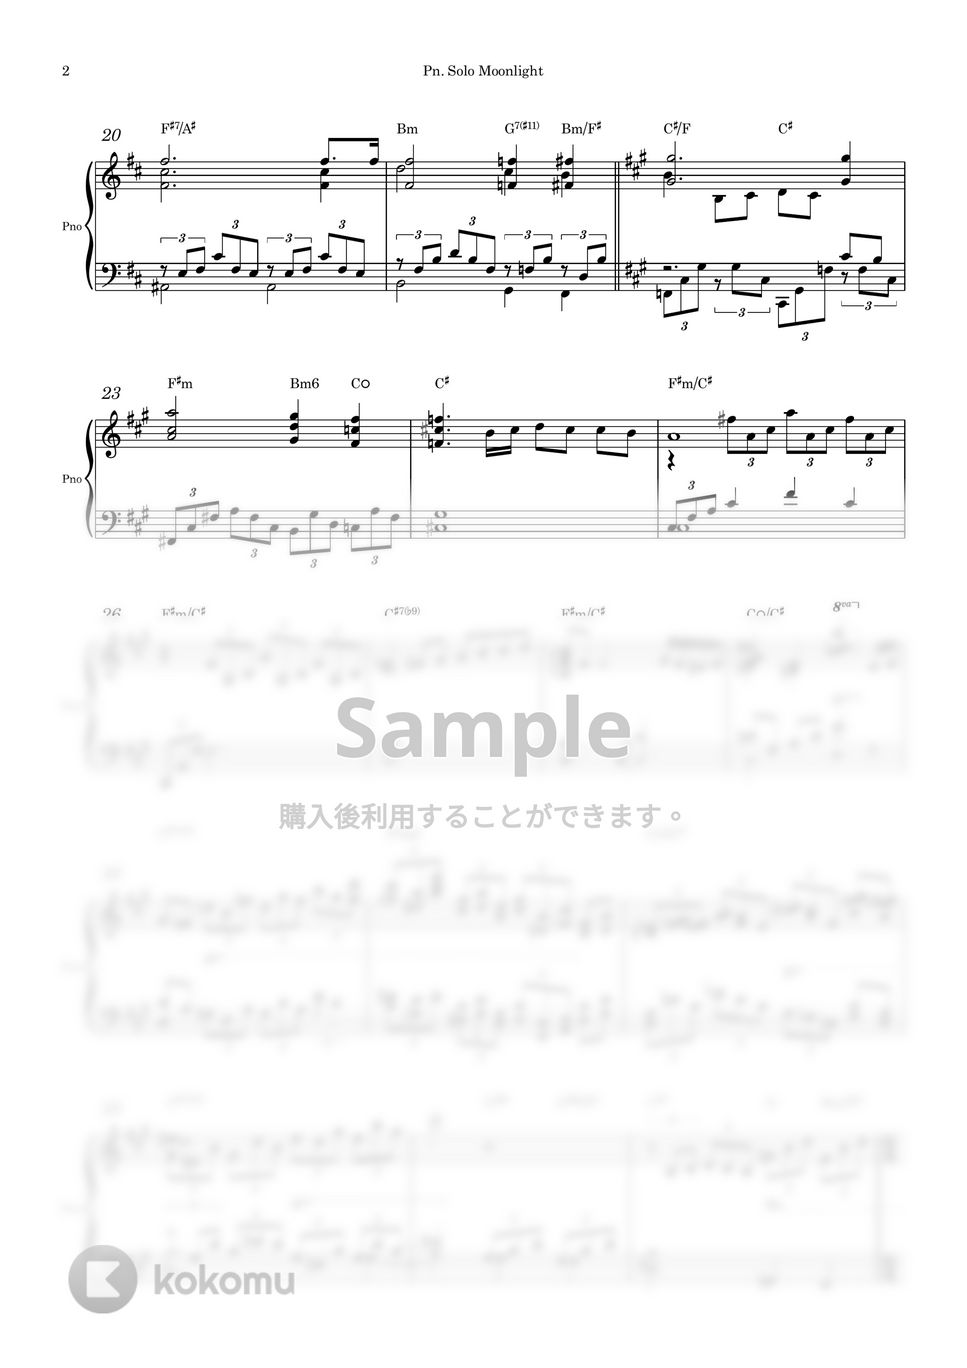 ベートーベン - 月光ソナタ (ピアノソロ) by Piano QQQ